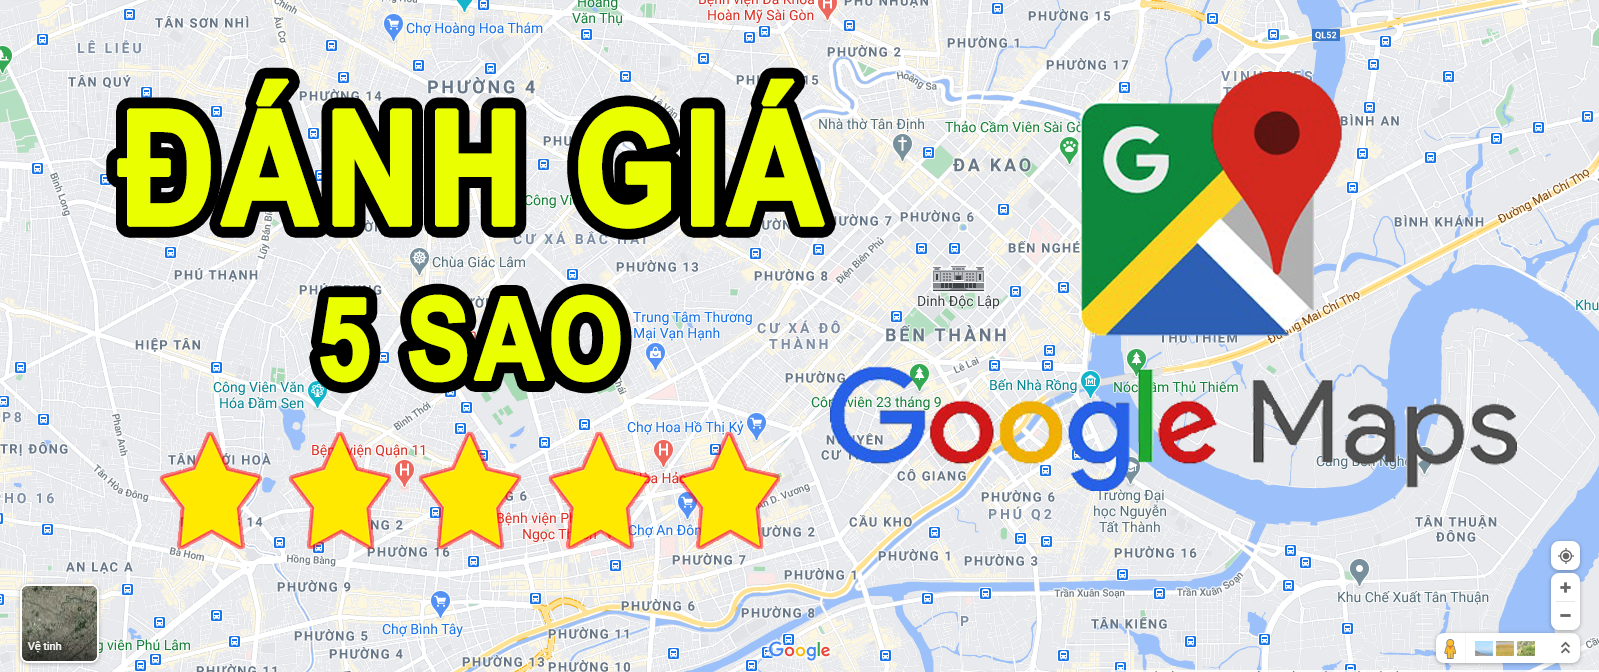 Hướng Dẫn Sử Dụng Phần Mềm Tăng Review (Đánh Giá) Google Maps – GoogleMapReviewer